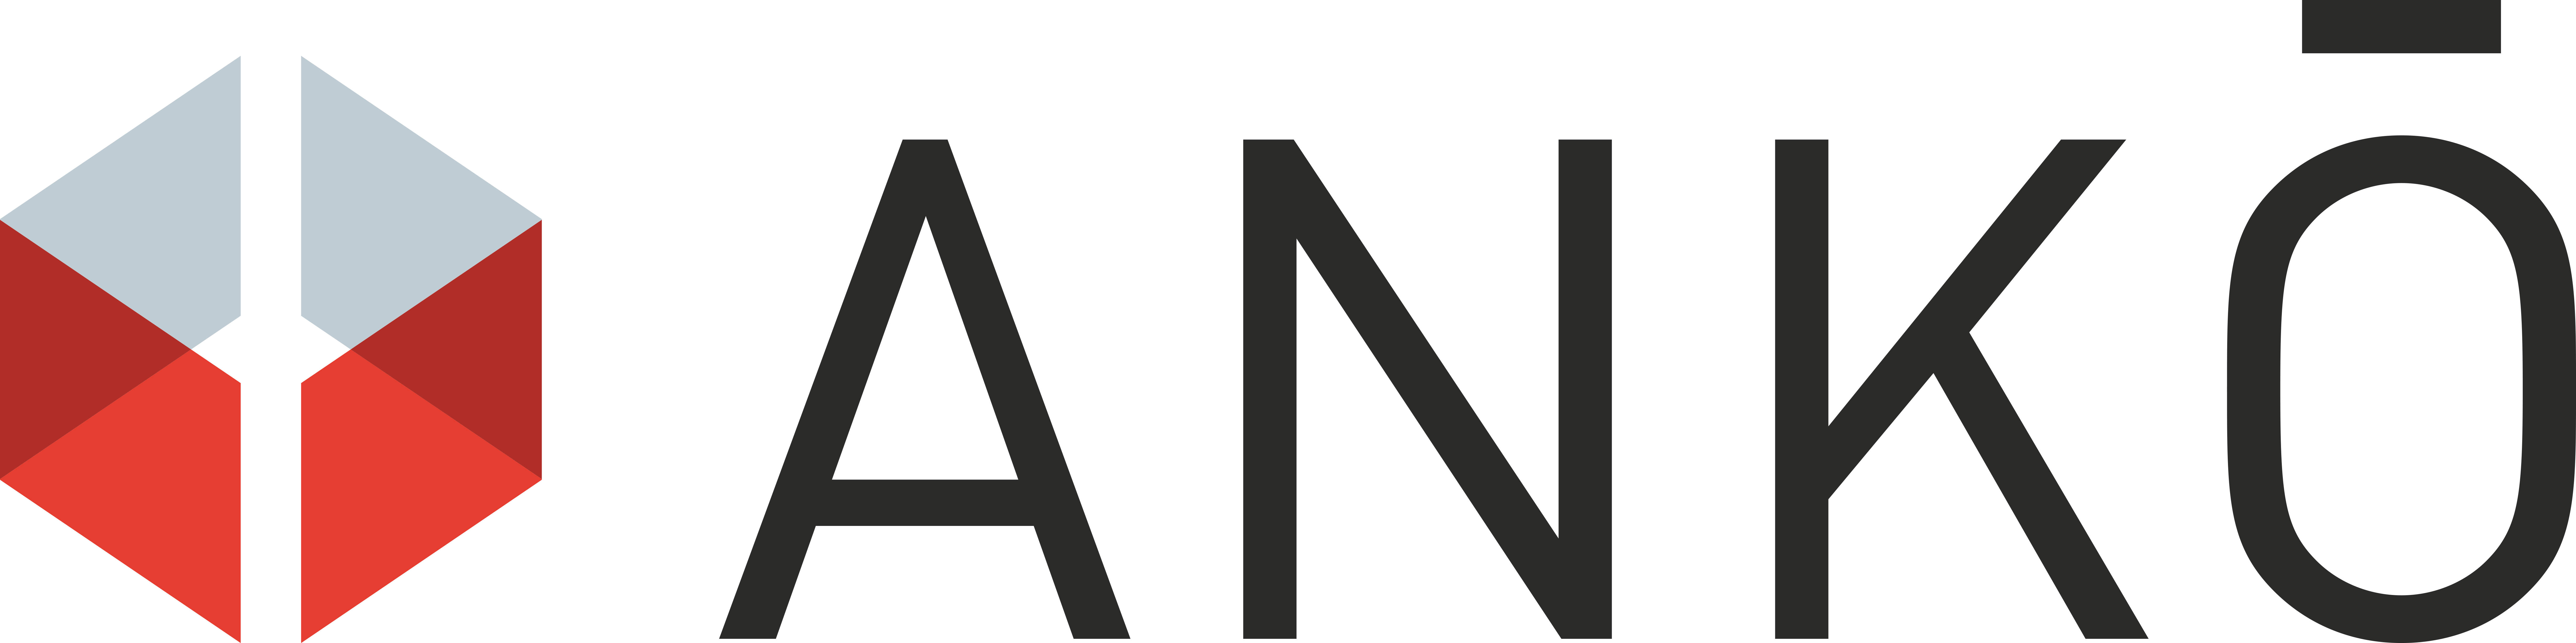 Ankö-Logo